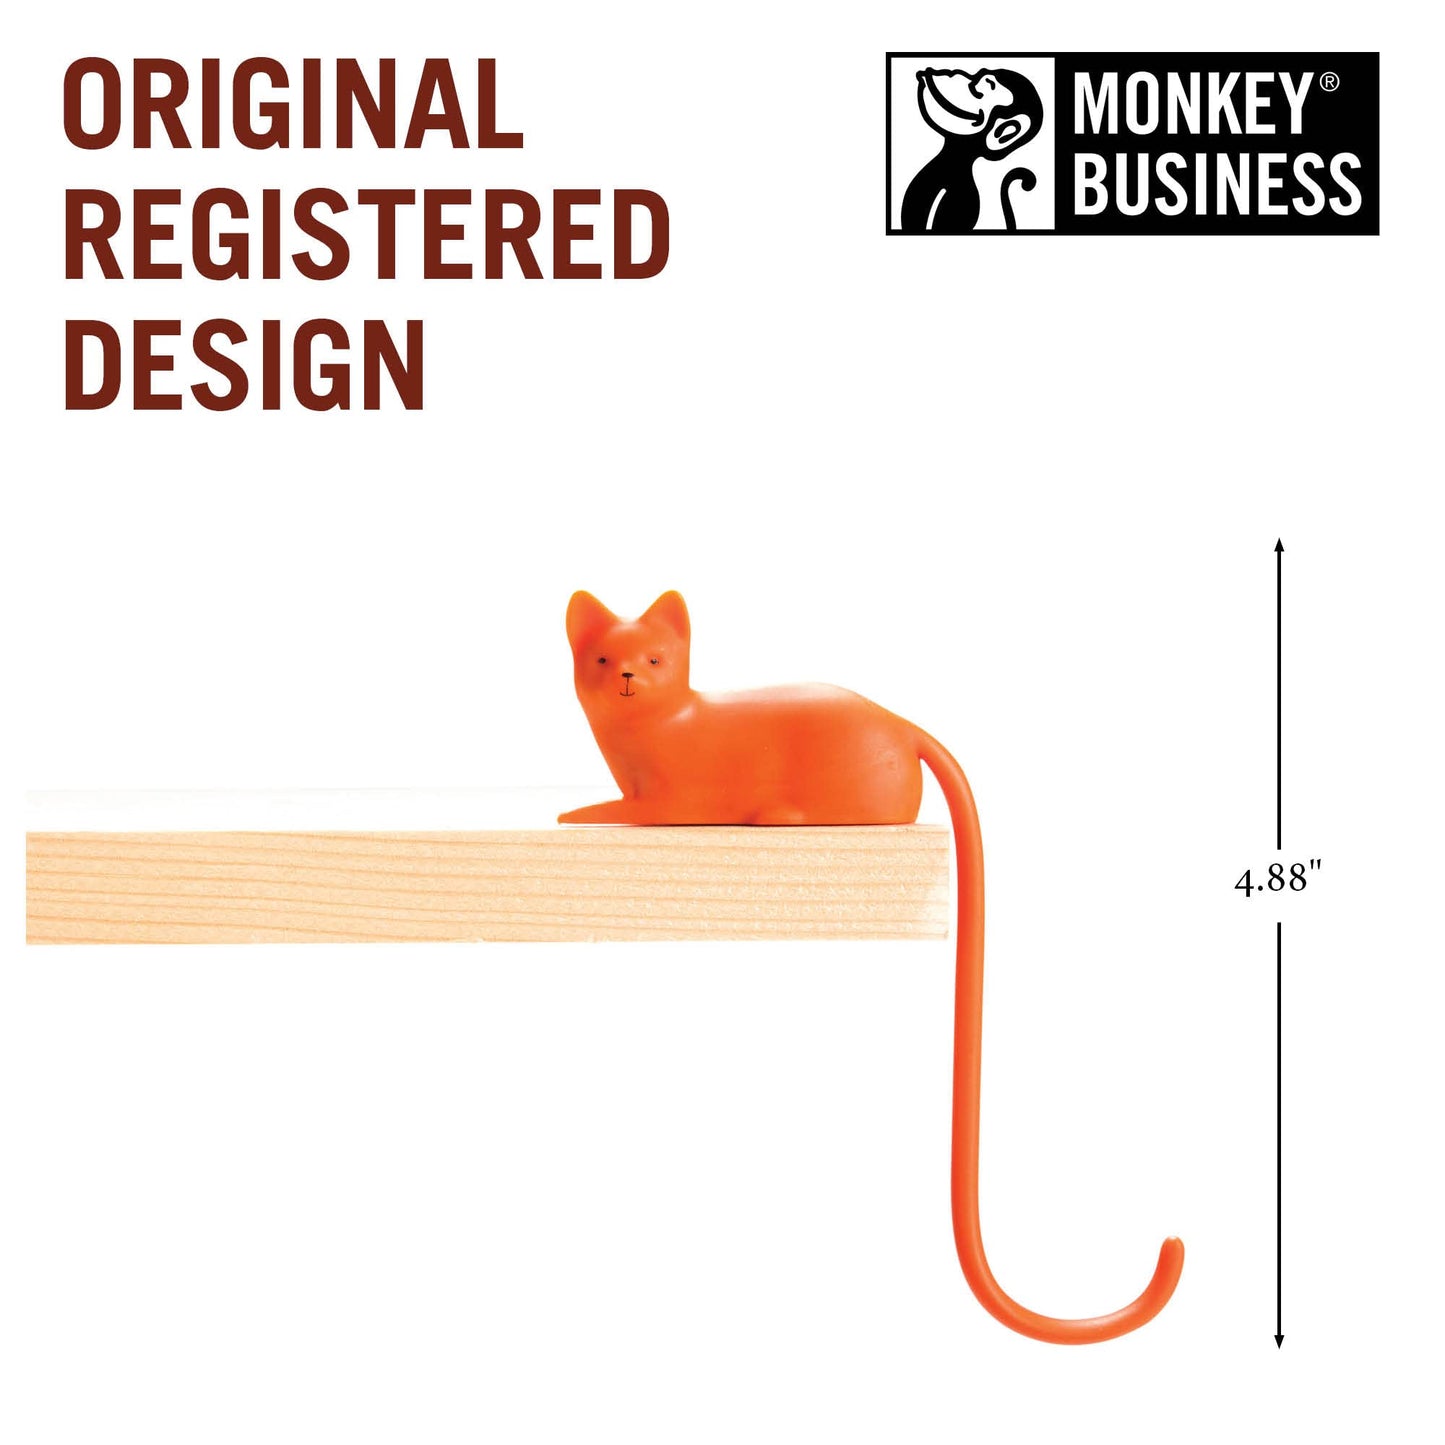 Cat Tail Hook for Desk or Screen - Orange & White